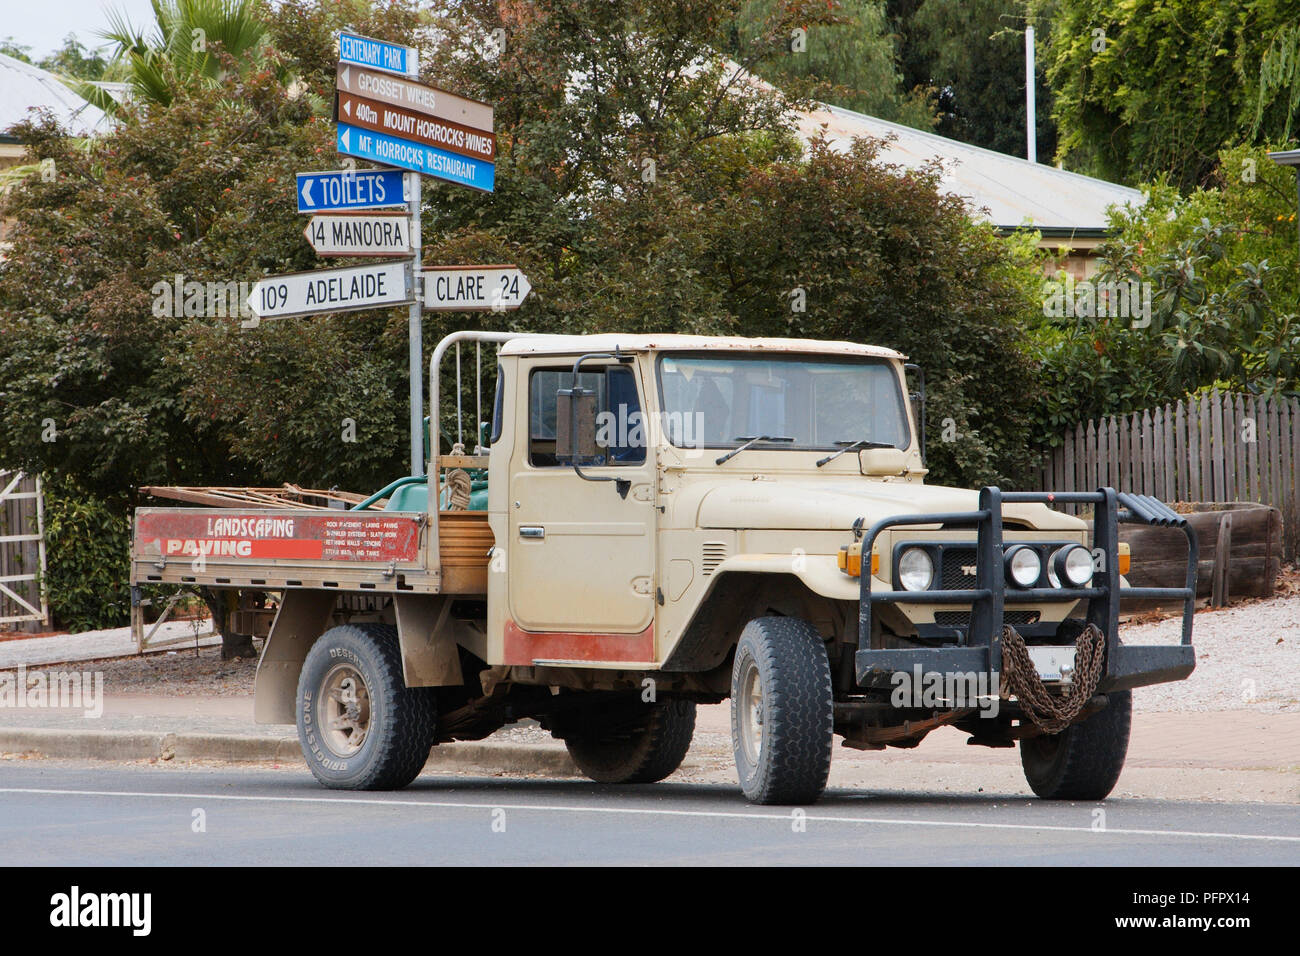 Australia, Auburn, pick-up truck parked near signpost Stock Photo